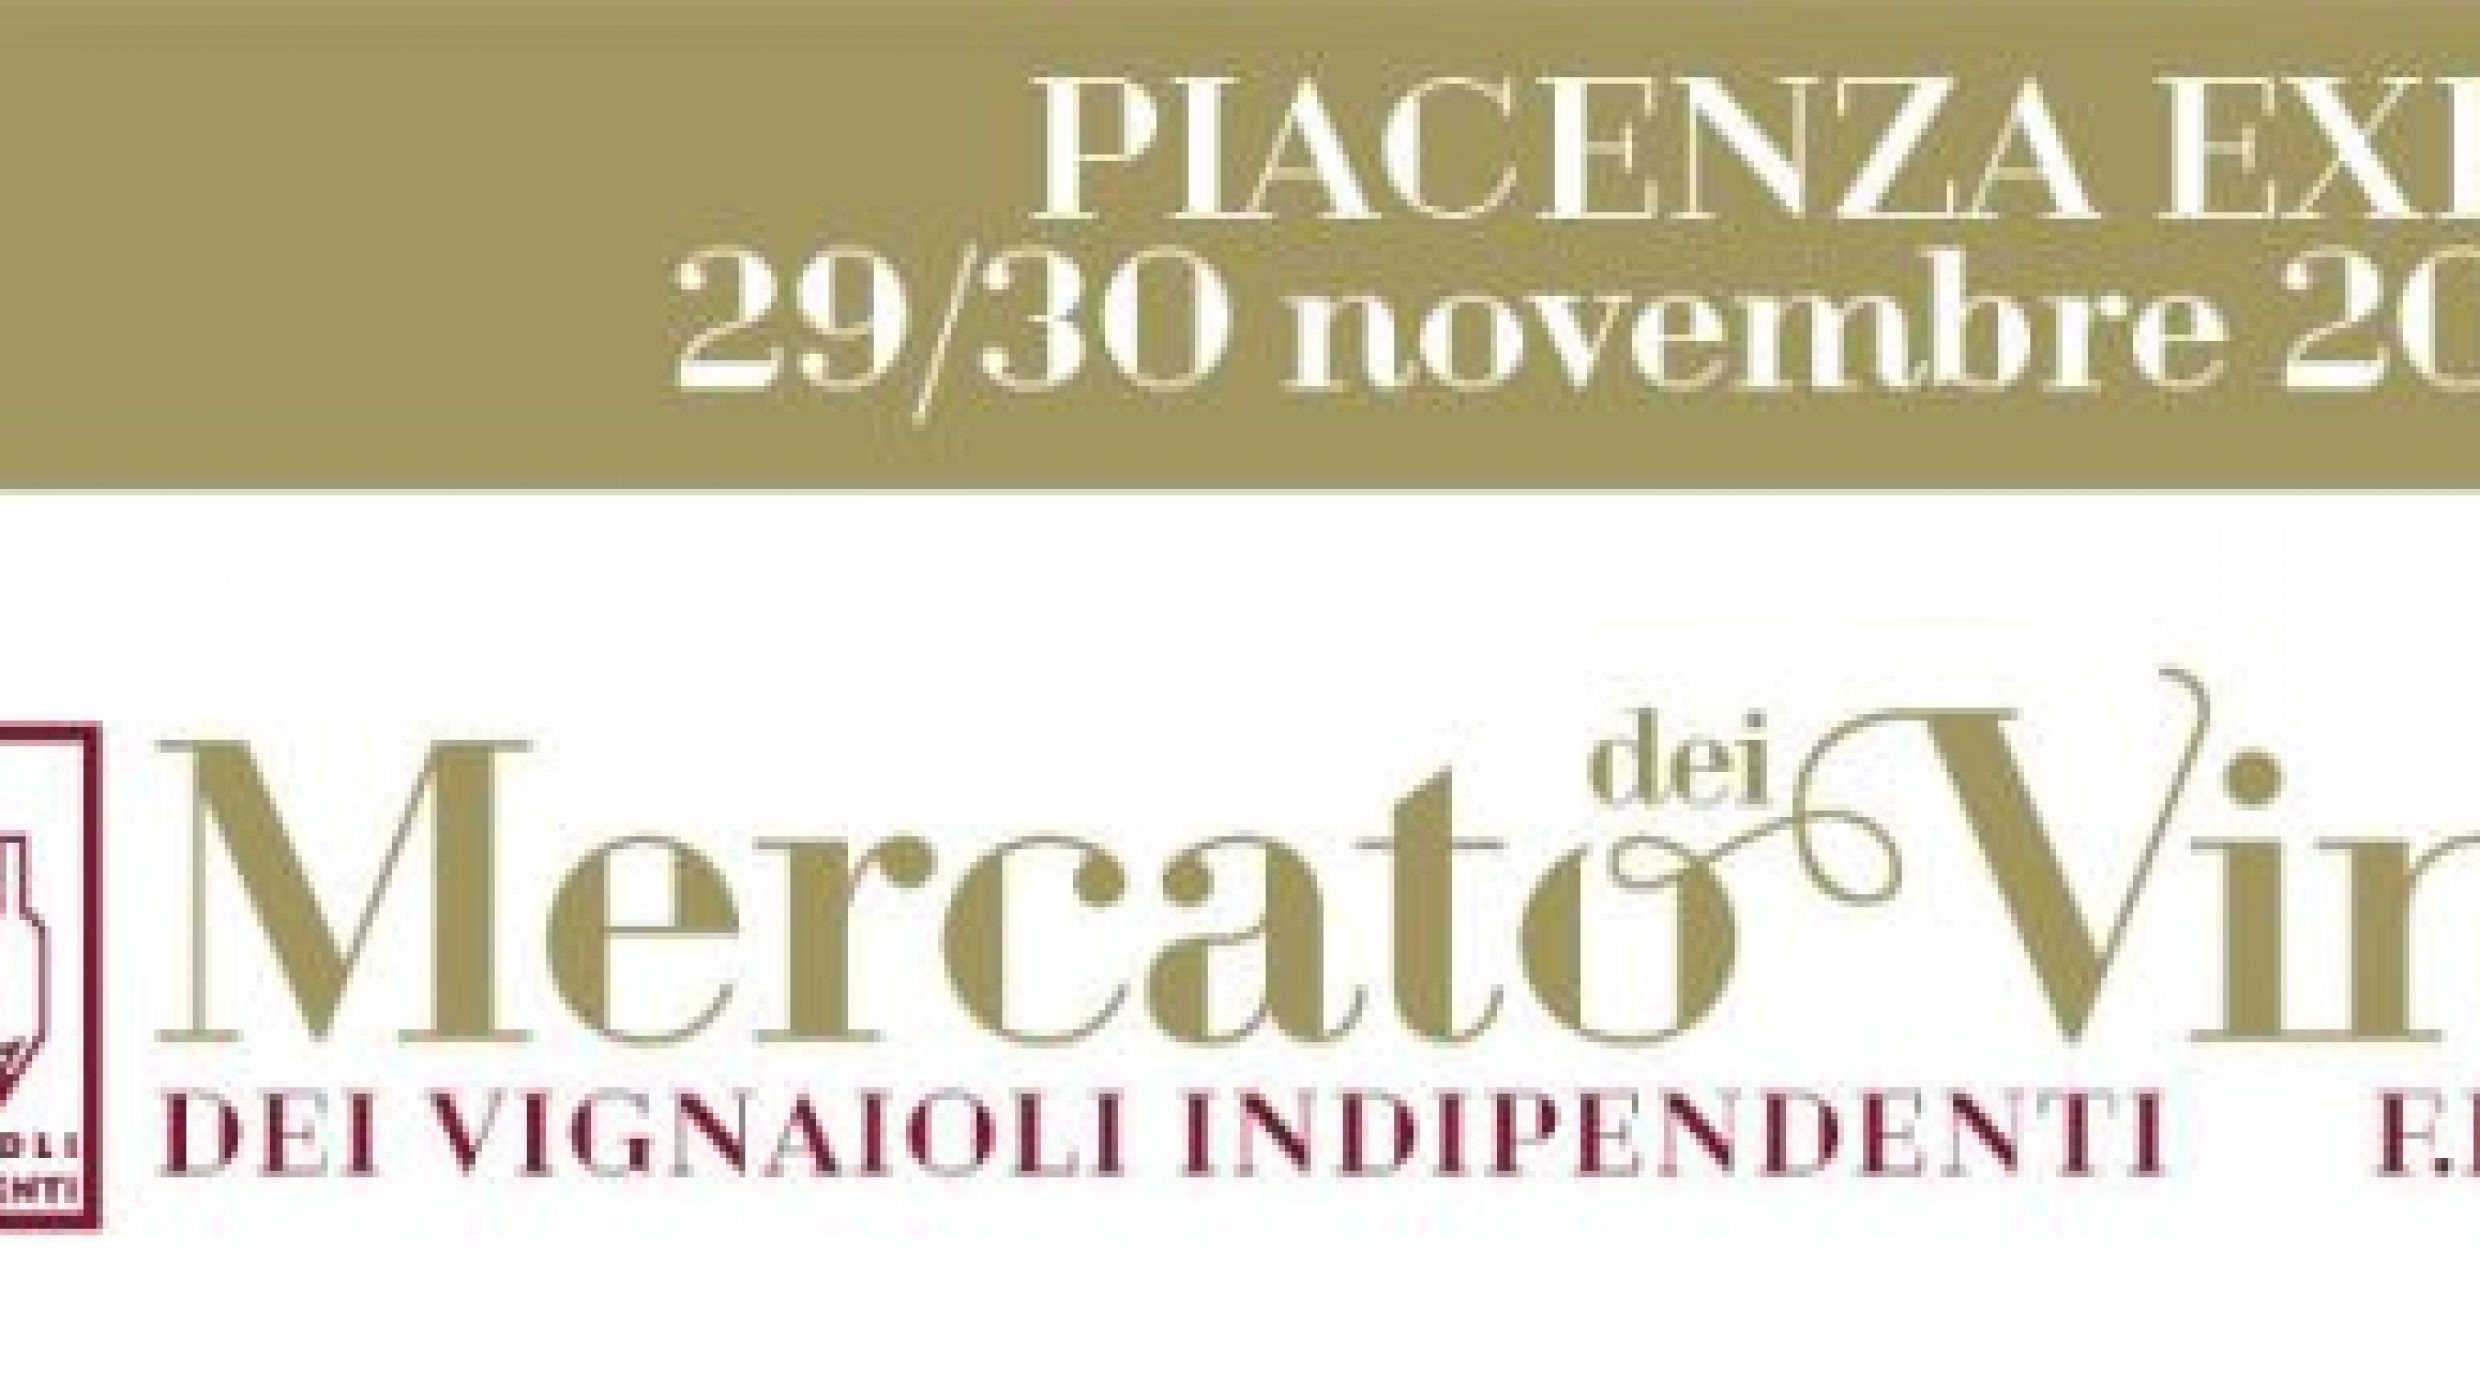 Mercato dei Vini in Piacenza F.I.V.I.